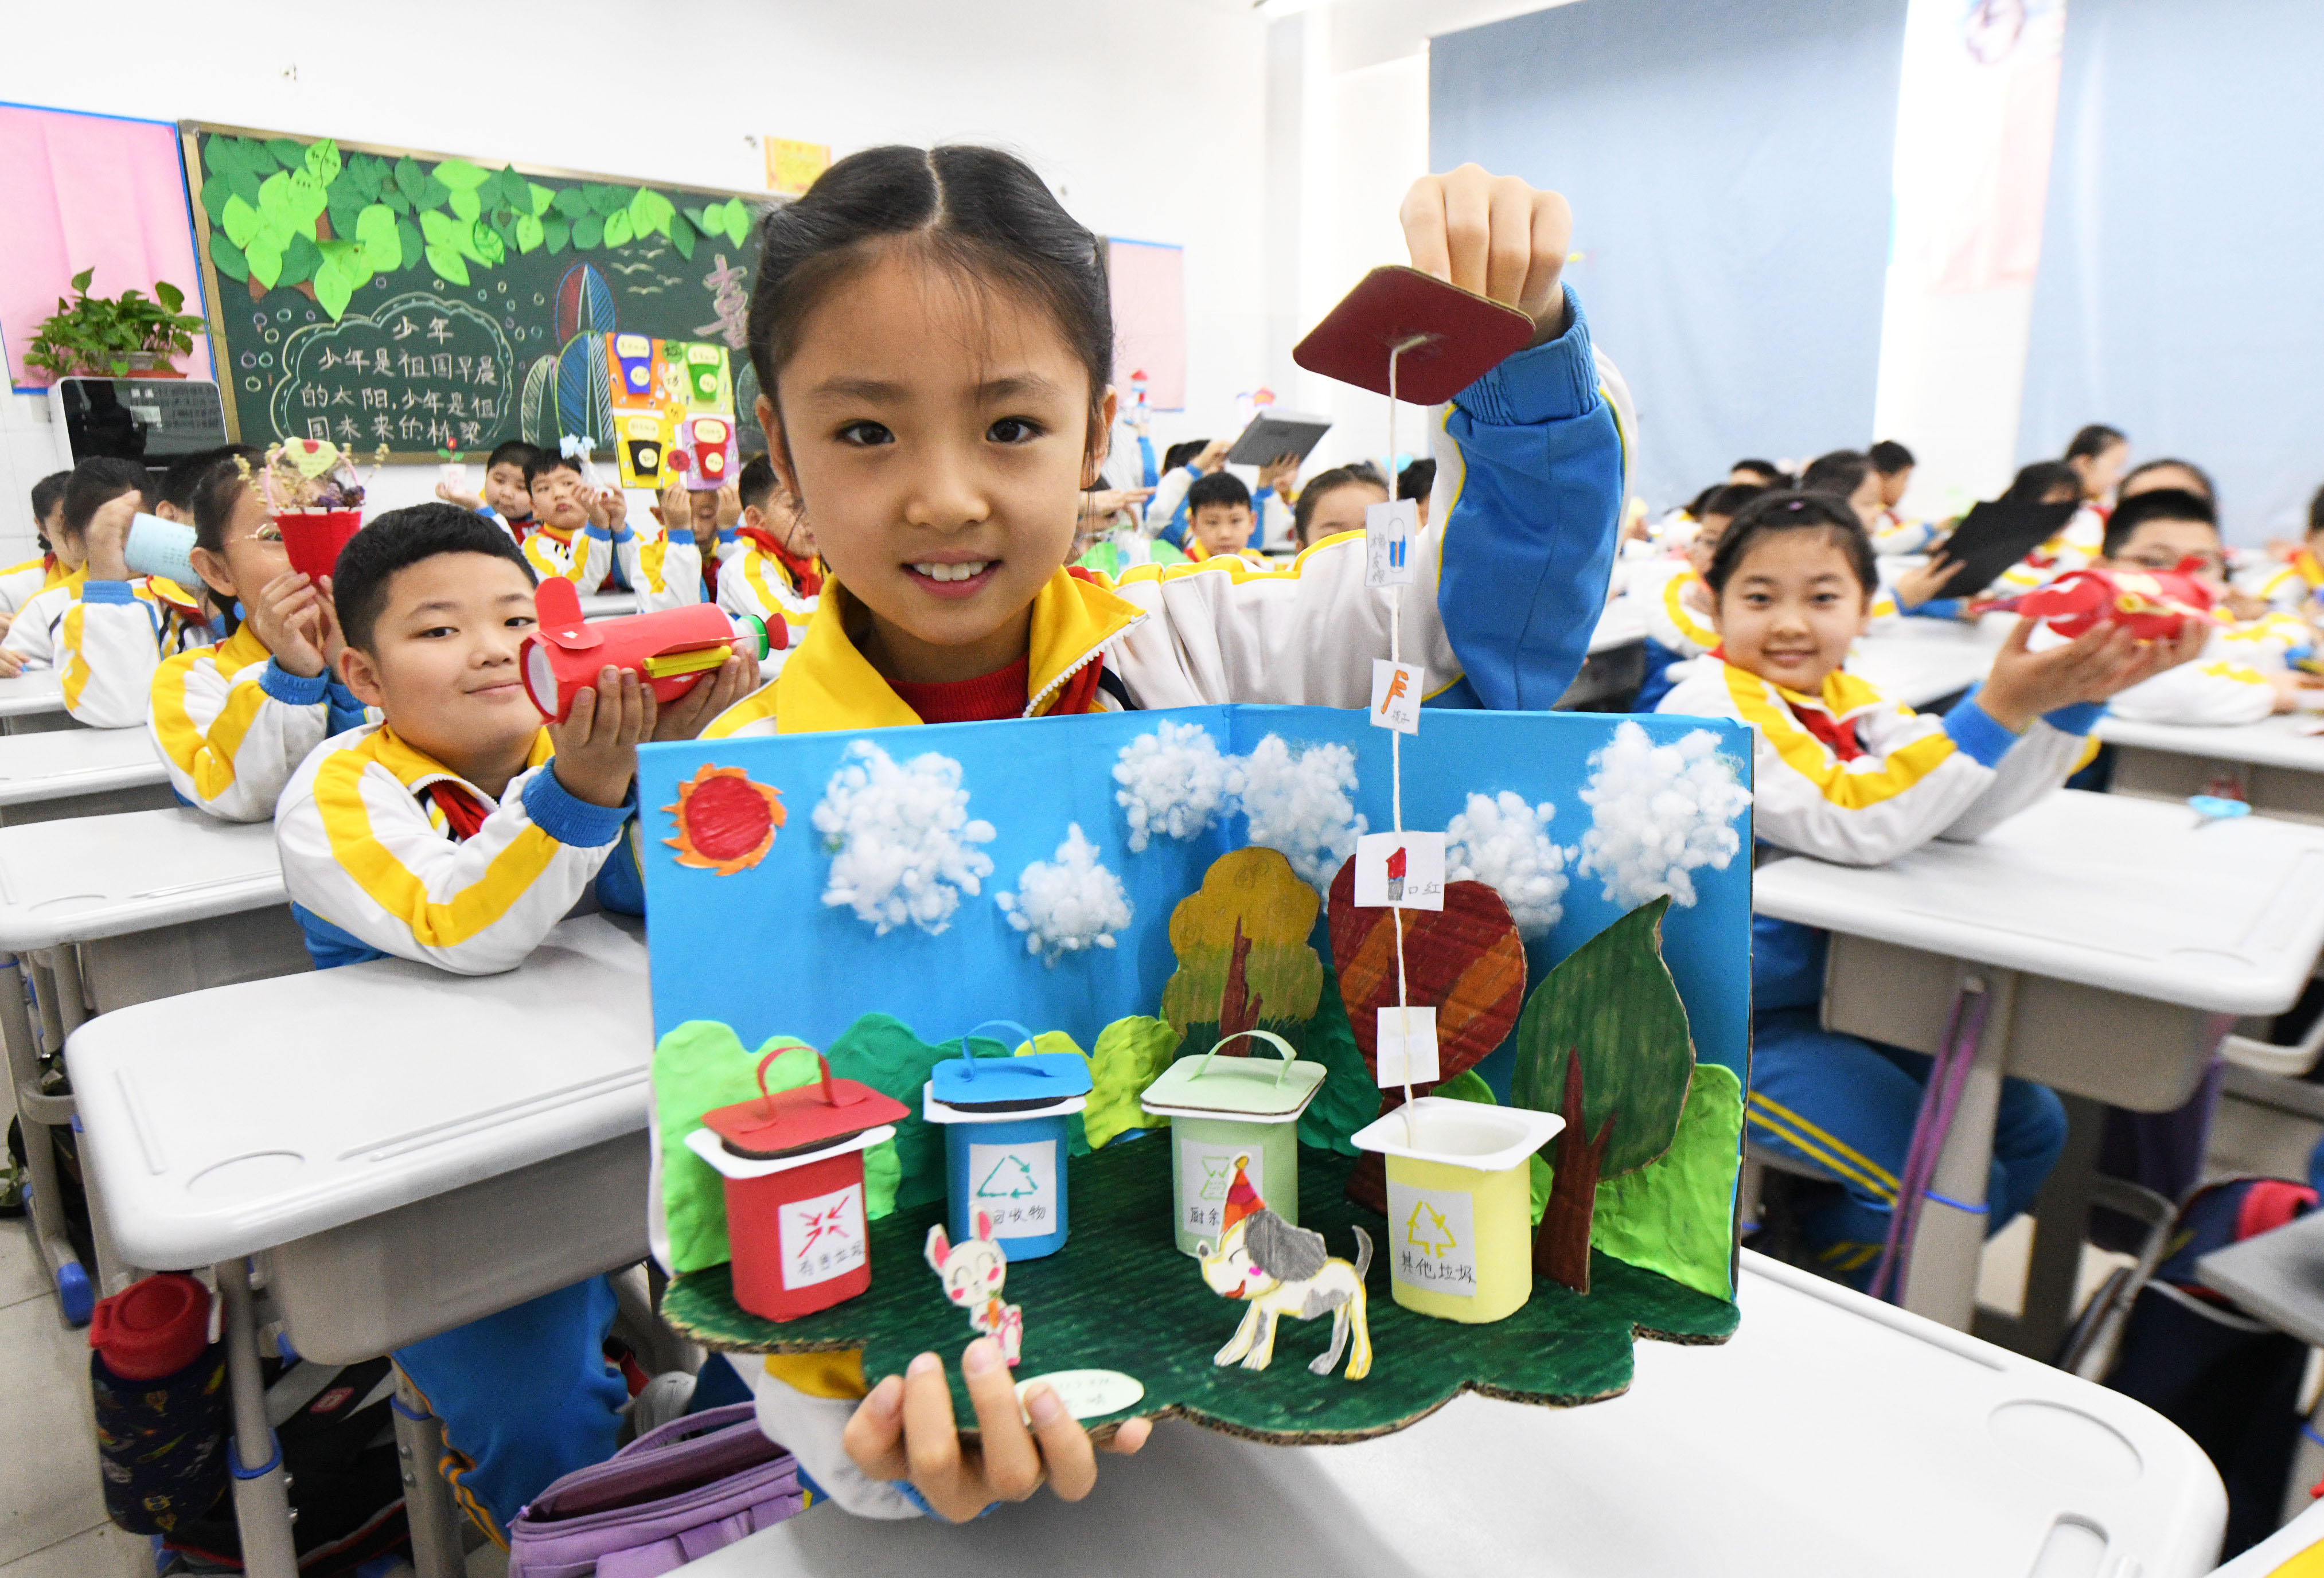 10月31日，河北省石家庄新乐市东长寿学校小学生展示利用废旧物品制作的手工作品。 贾敏杰摄